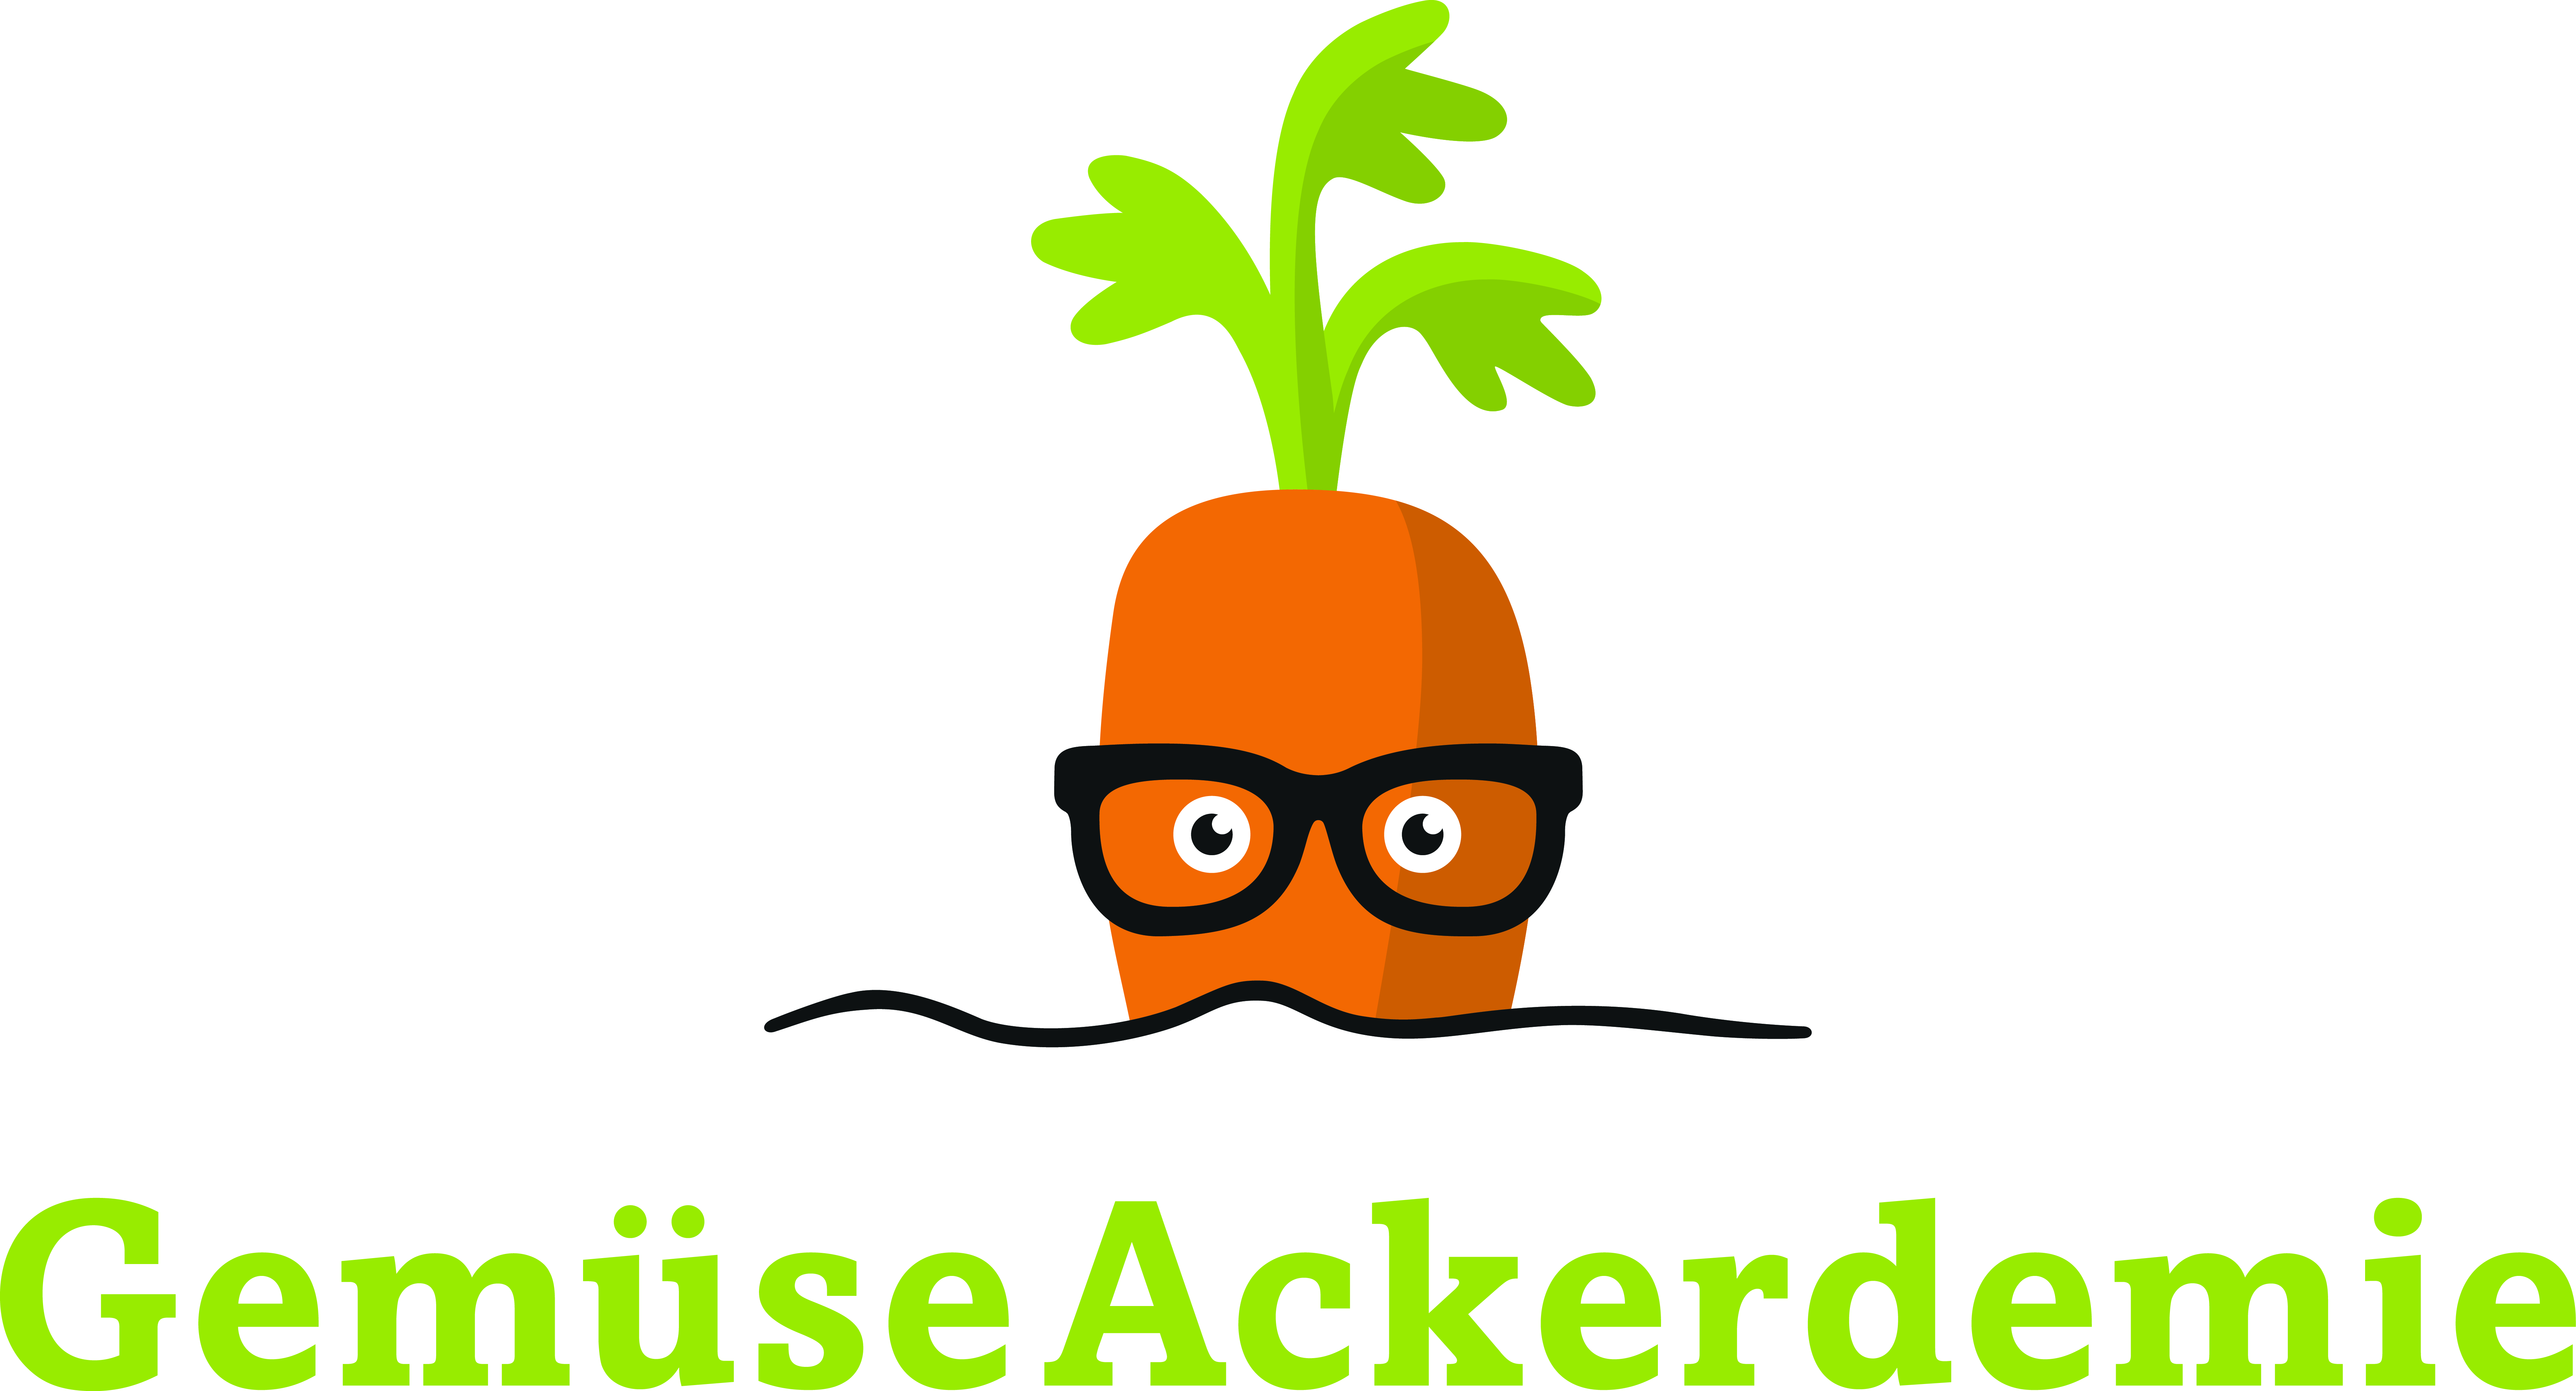 GemüseAckerdemie_Logo_JPG_CMYK.jpg